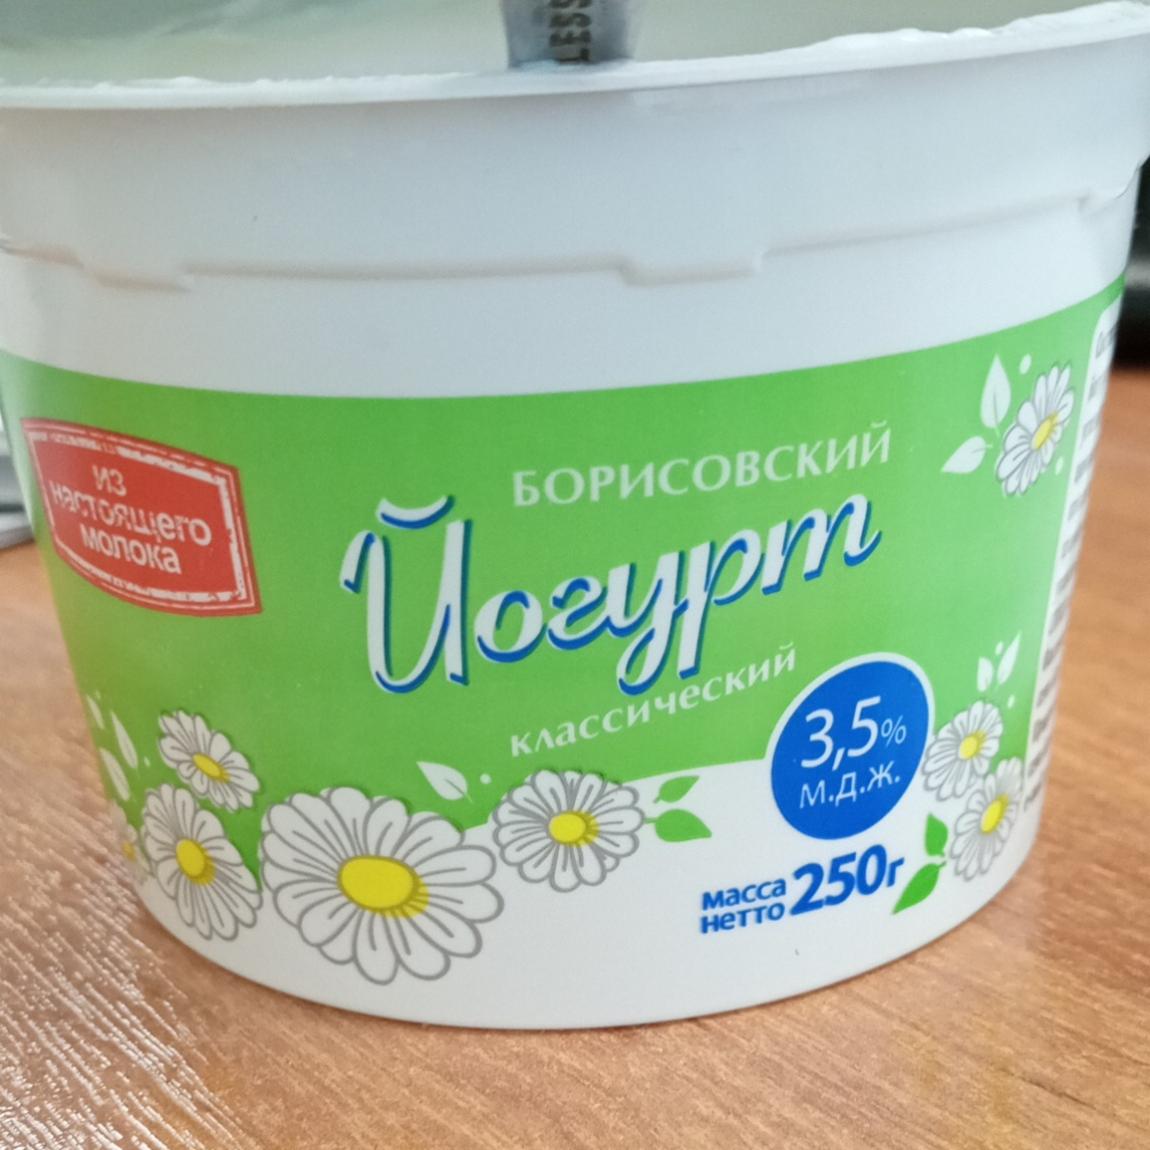 Фото - Йогурт классический 3.5% СППСК Борисовский